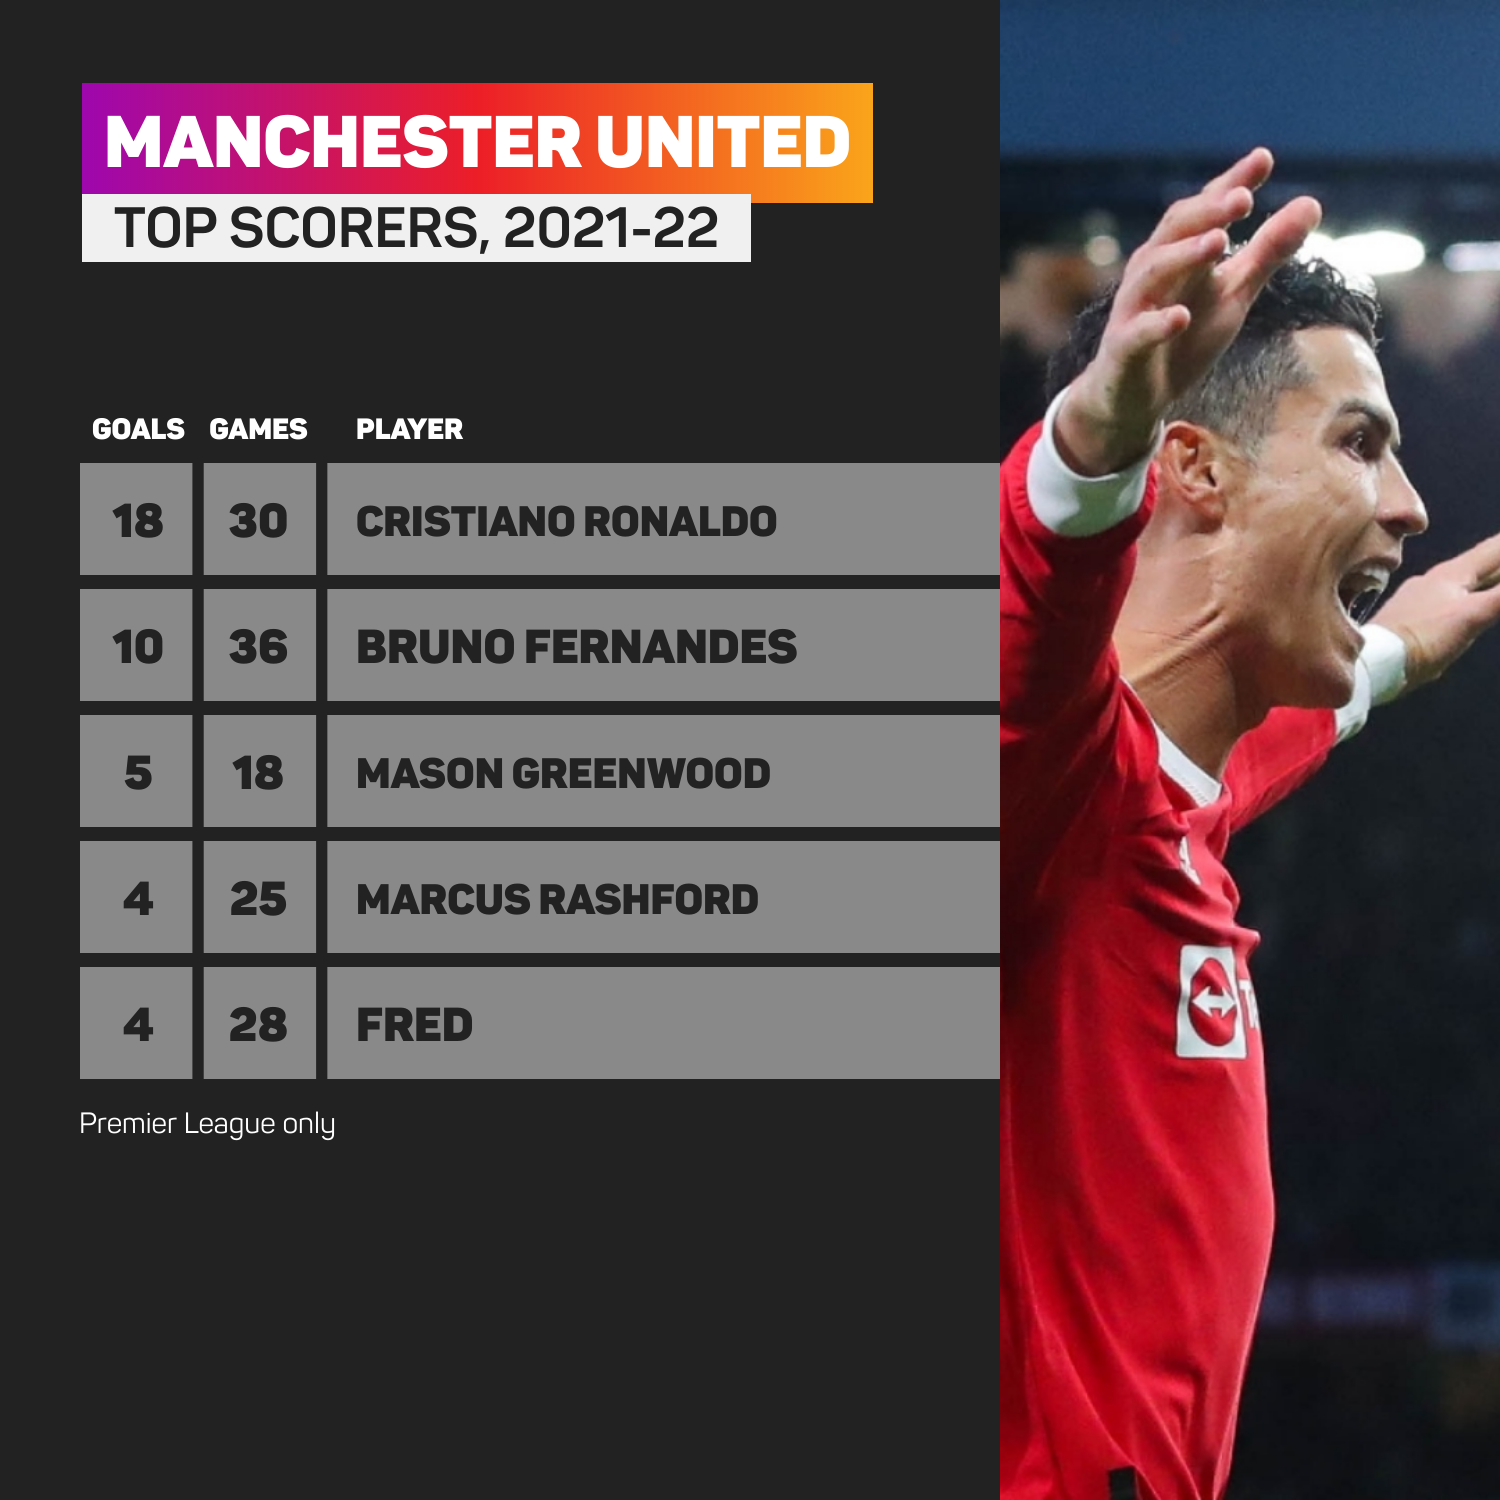 Cristiano Ronaldo scored 18 Premier League goals for Manchester United last season